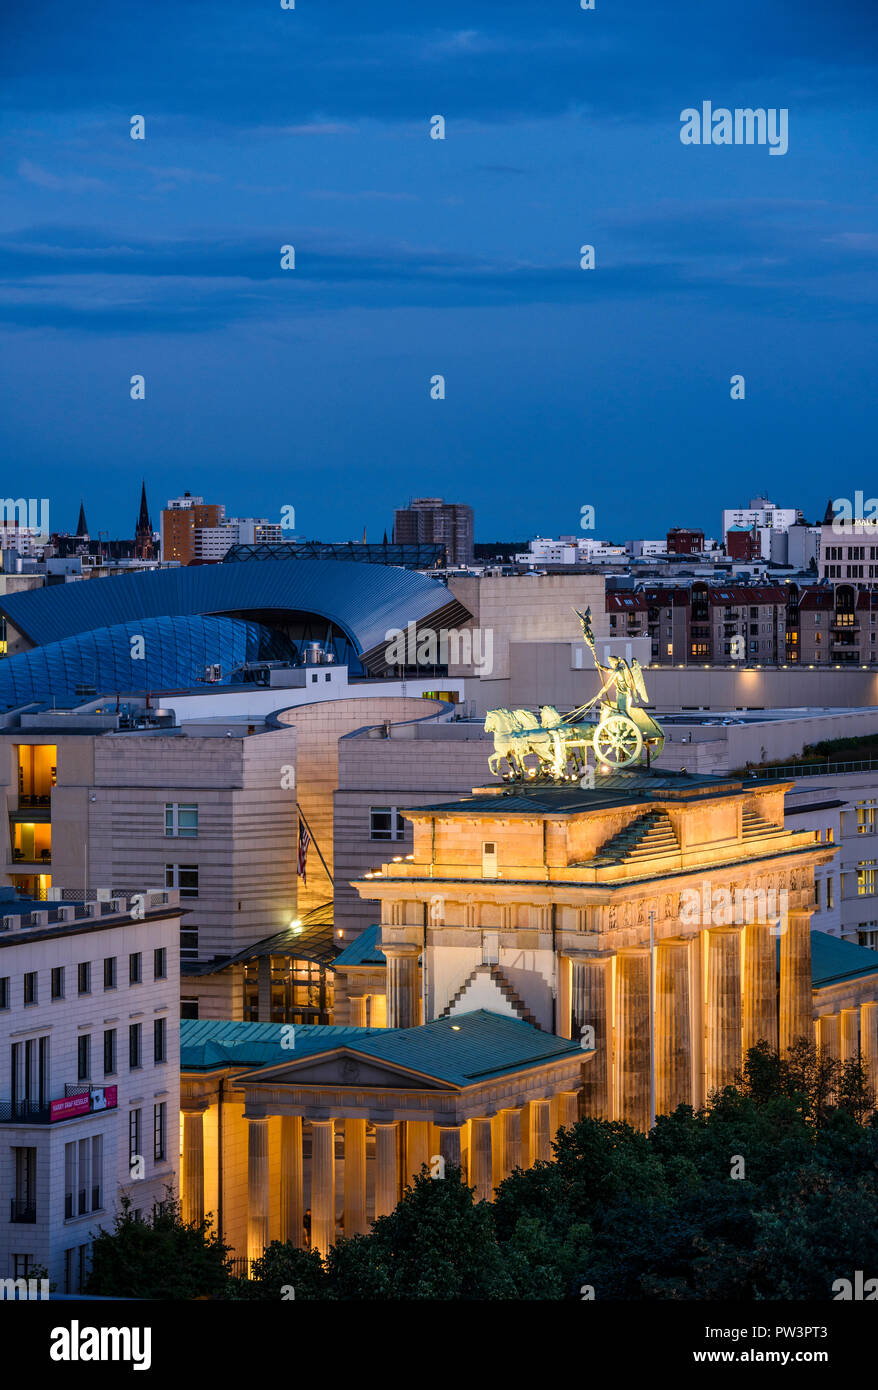 Berlino. Germania. Lo skyline di Berlino con la vista in elevazione della Porta di Brandeburgo (Brandenburger Tor) illuminata di notte, e gli edifici sulla Pariser Platz, Foto Stock